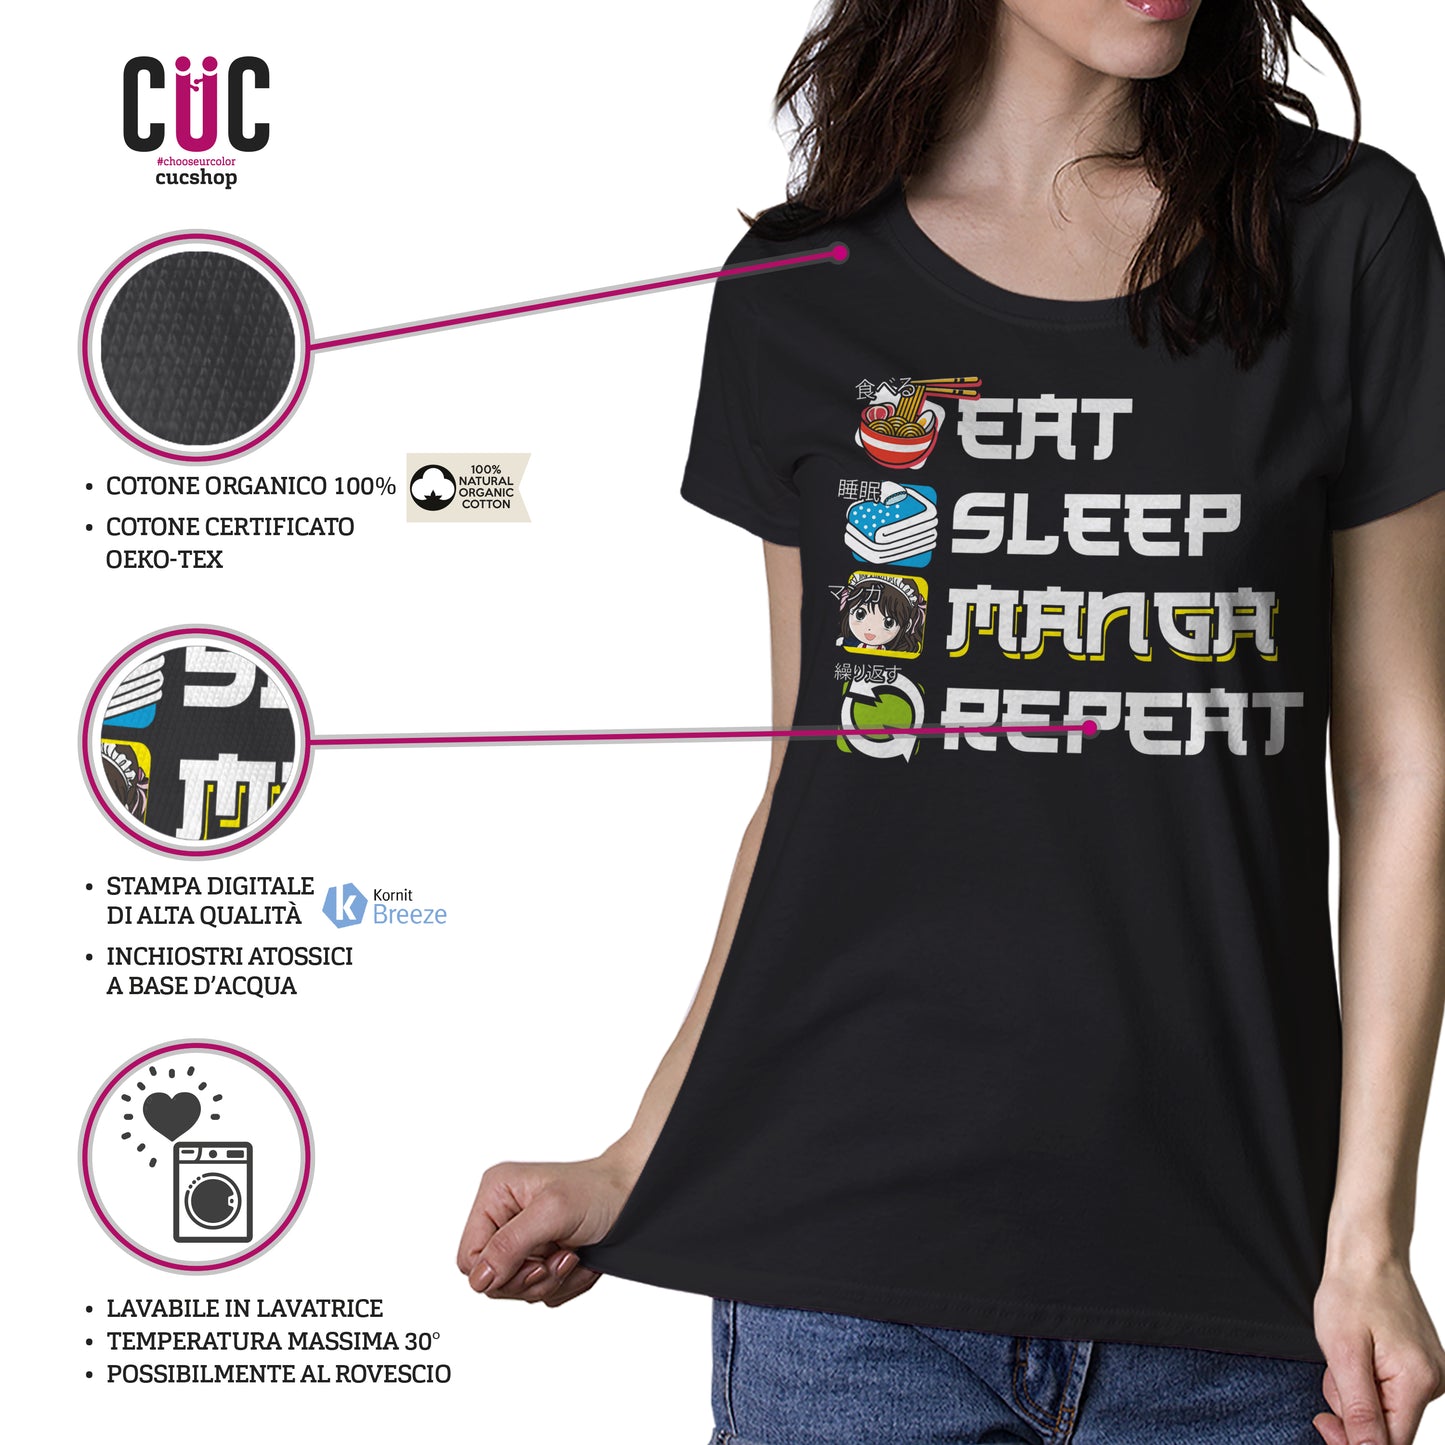 T-Shirt Eat Sleep Manga Repeat - Giapponese #chooseurcolor - CUC chooseurcolor